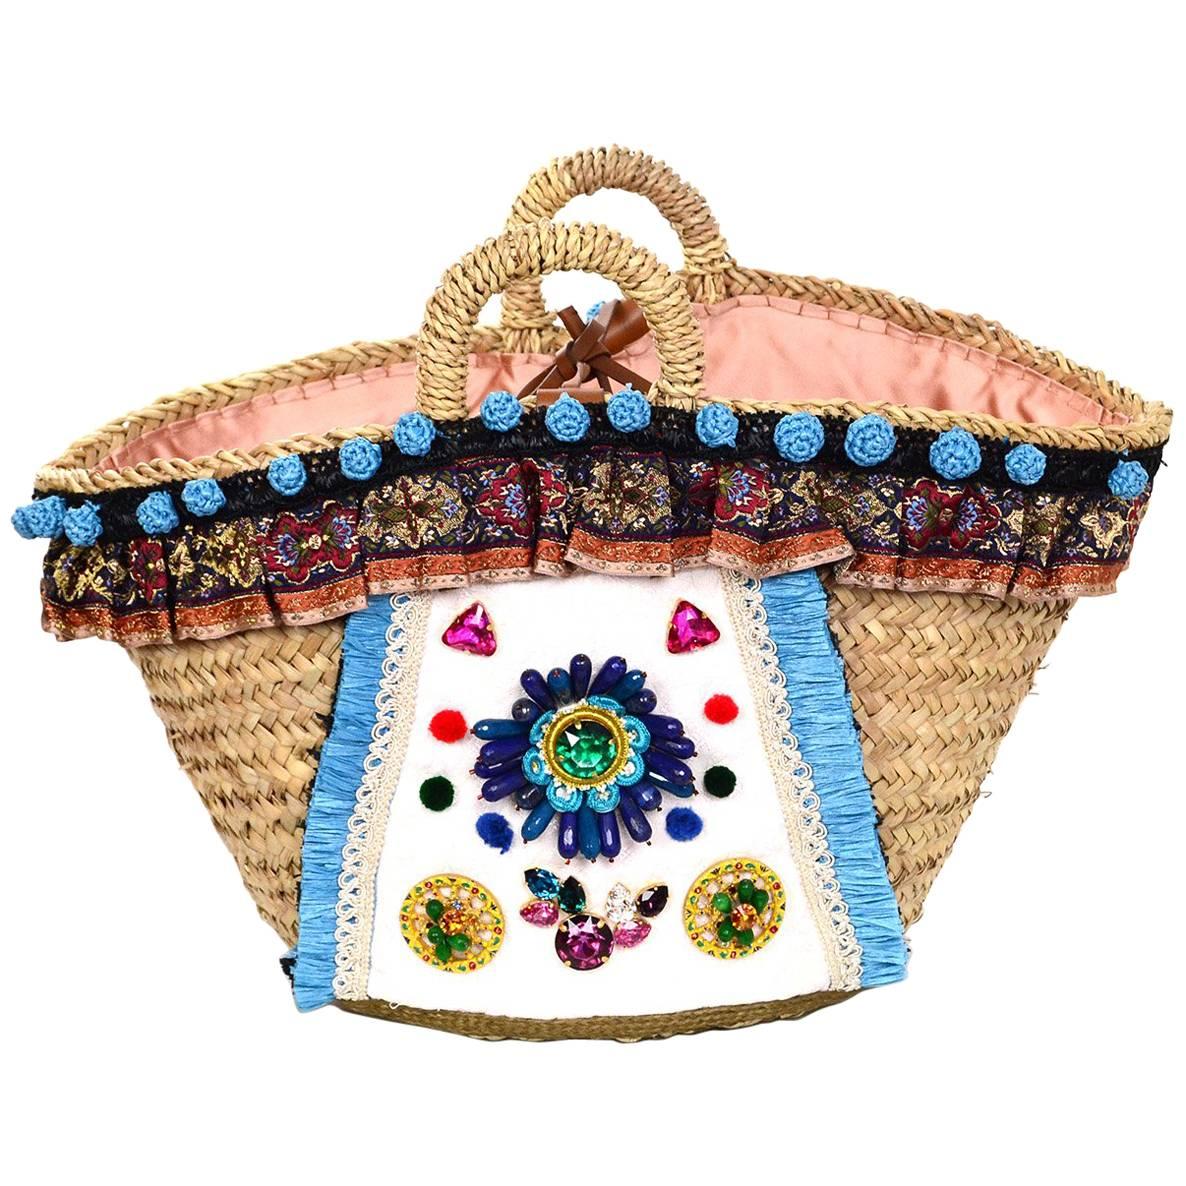 Dolce & Gabbana Summer '16 Embellished Runway Tote Bag